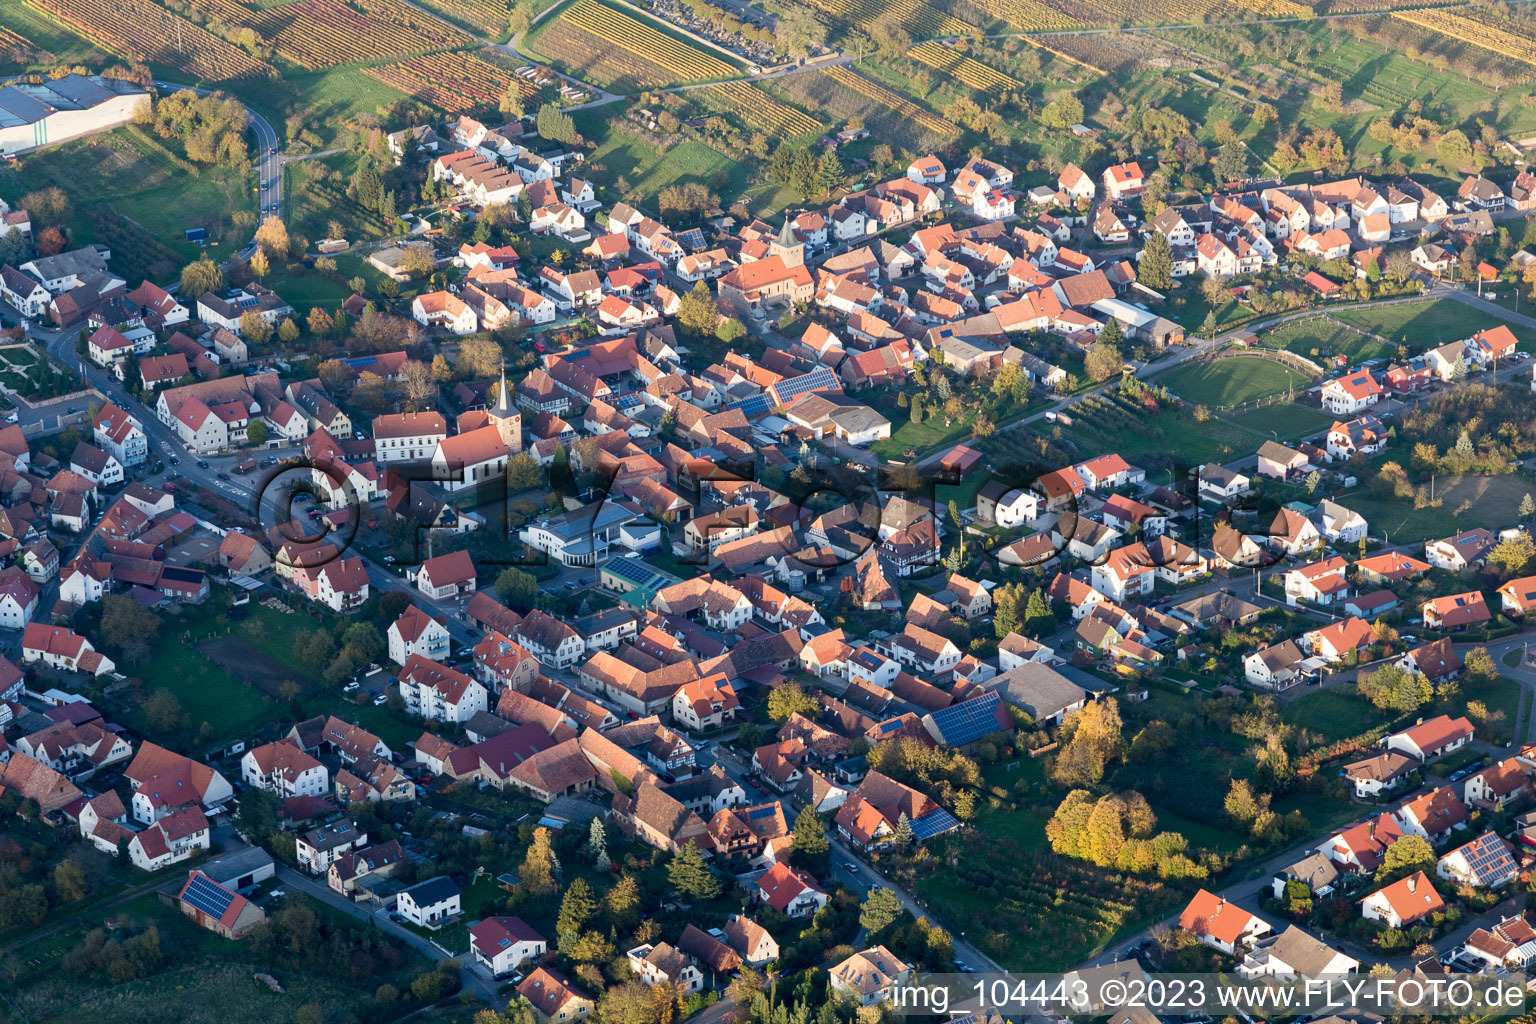 District Rechtenbach in Schweigen-Rechtenbach in the state Rhineland-Palatinate, Germany seen from above